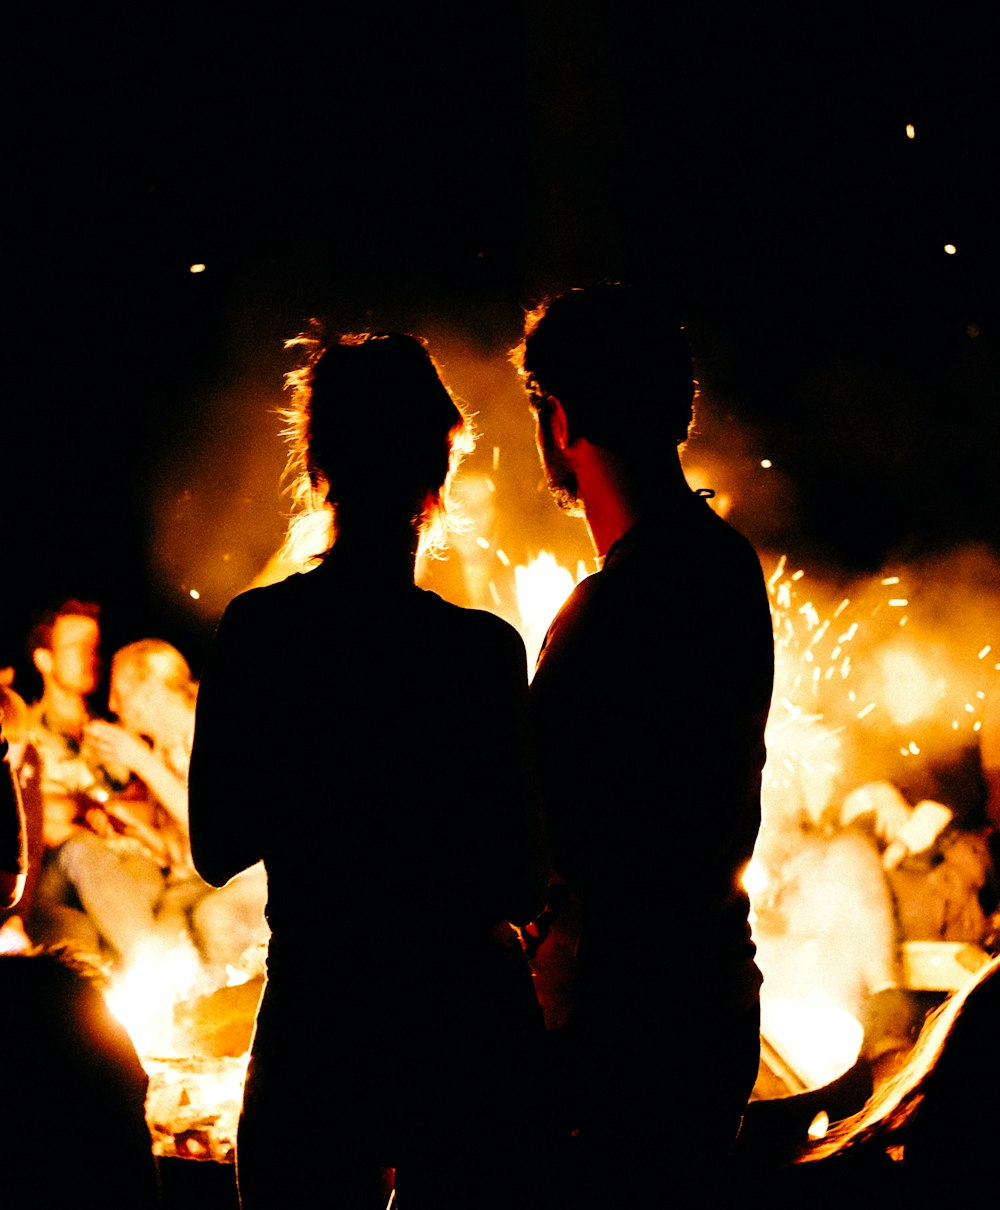 zwei Personen stehen vor dem Lagerfeuer